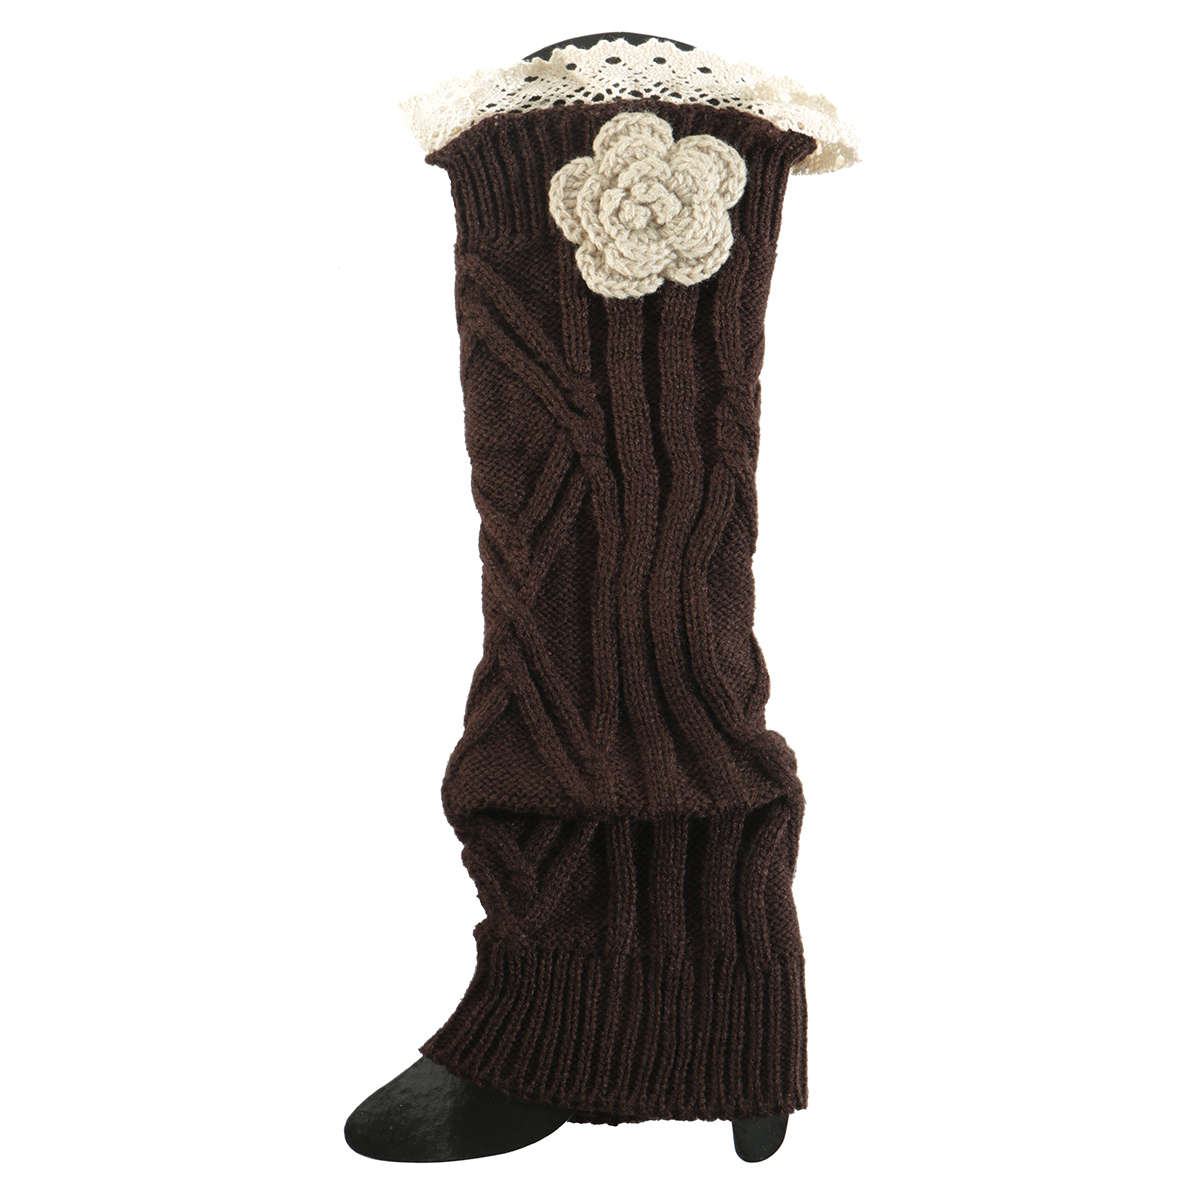 Brown Crochet Flower Boot Cuff 50sp